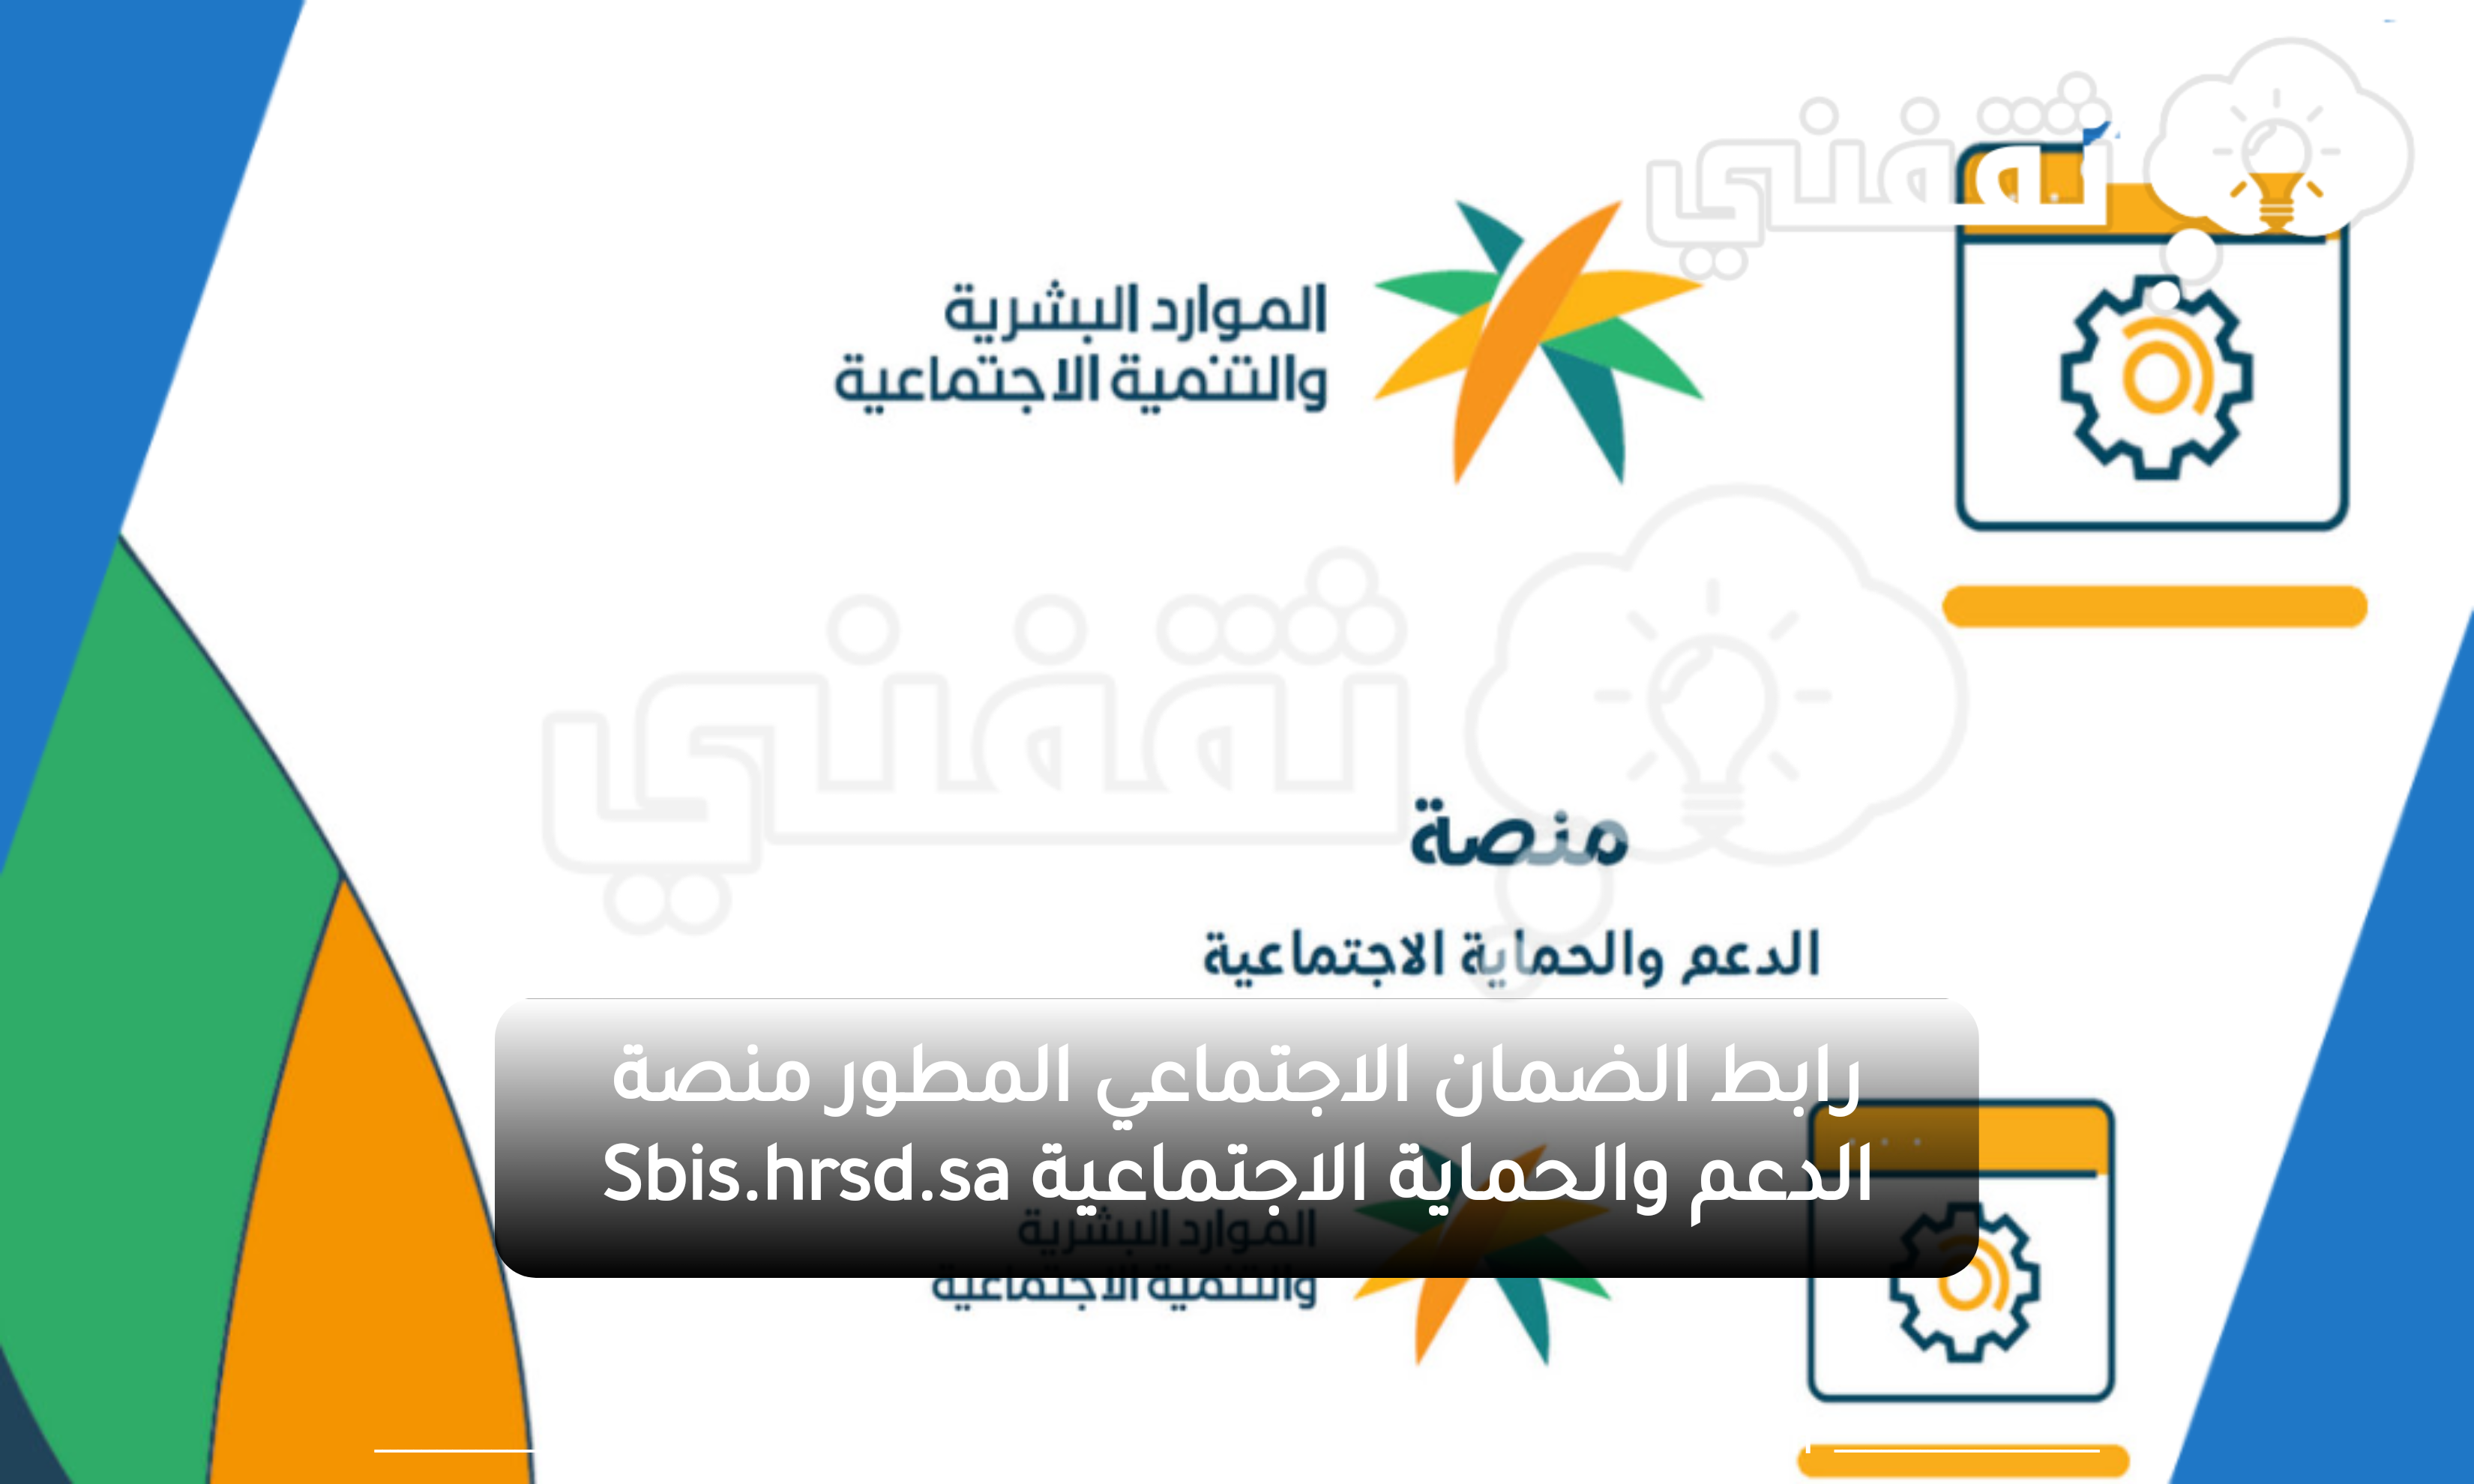 رابط الضمان الاجتماعي المطور منصة الدعم والحماية الاجتماعية Sbis.hrsd .sa - مدونة التقنية العربية